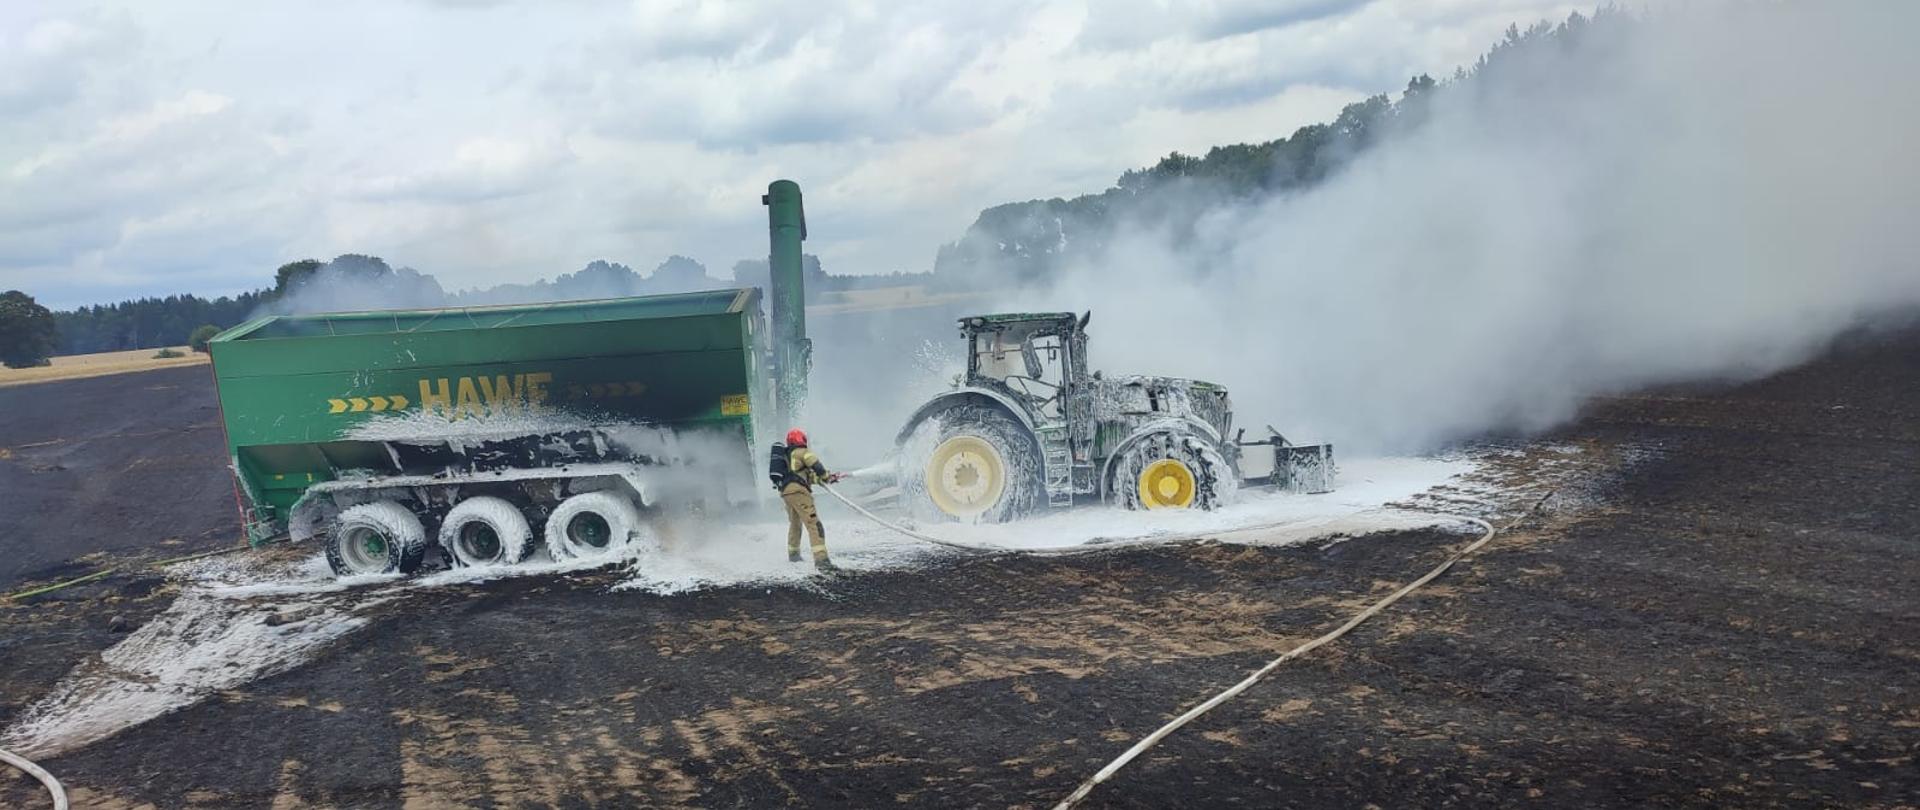 Zdjęcie przedstawia moment gaszenia ciągnika rolniczego z przyczepą, które gasi strażak podający piane gaśniczą.